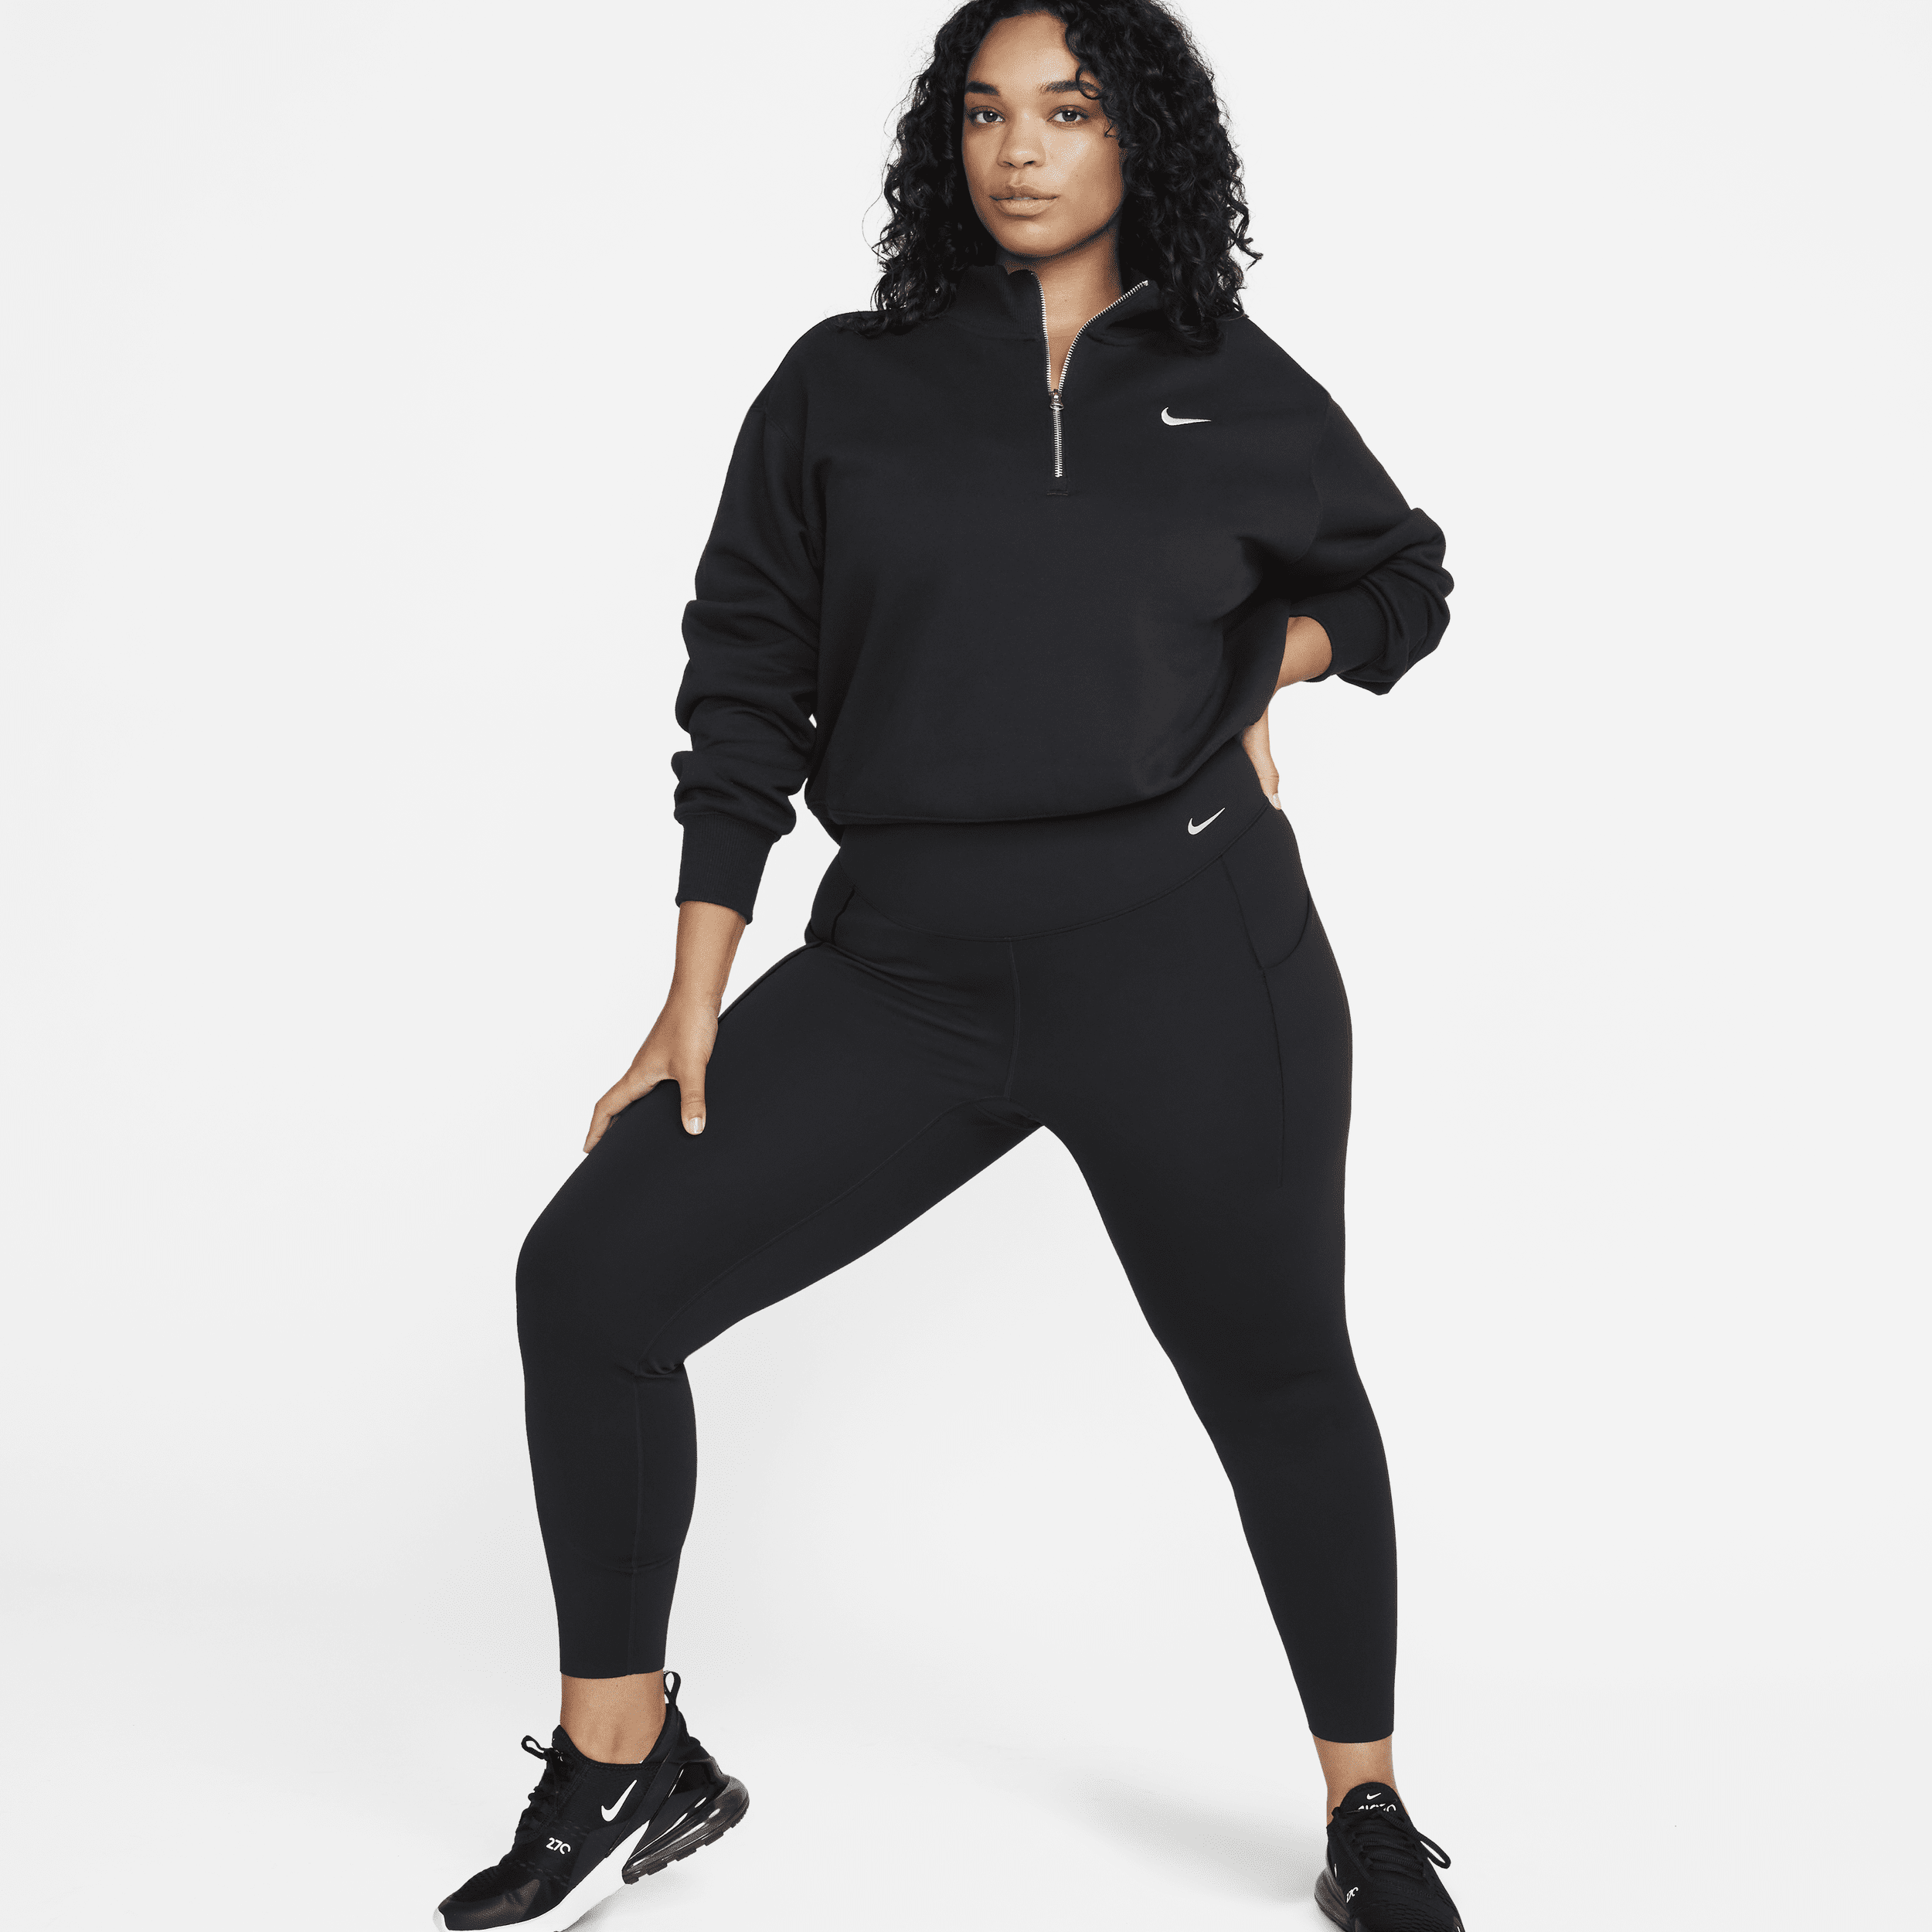 Leggings a tutta lunghezza a vita alta con tasche e sostegno medio Nike Universa – Donna - Nero